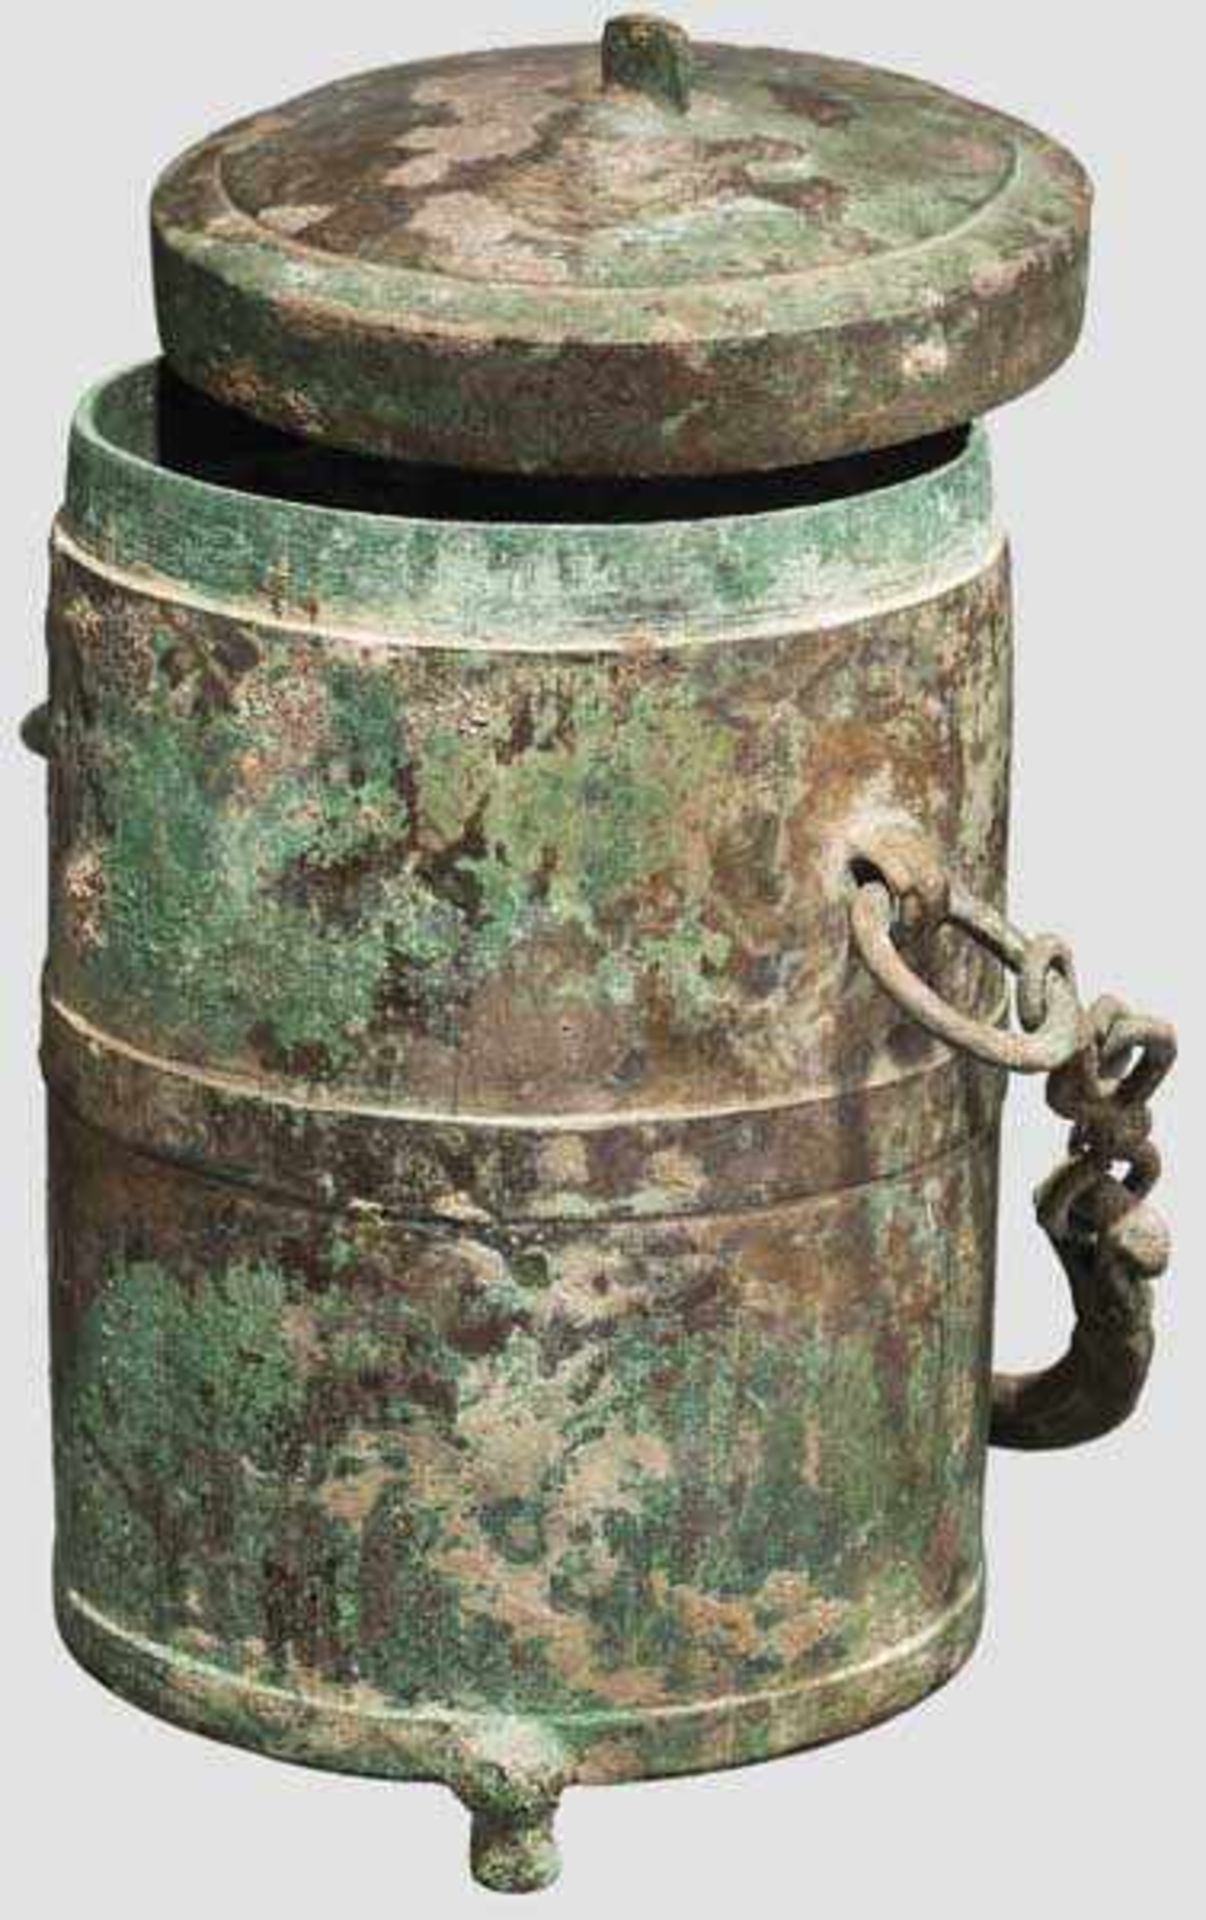 Archaische Bronzedose, China, Zeit der streitenden Reiche, 4./3. Jhdt. v. Chr. Dünnwandig - Bild 2 aus 2